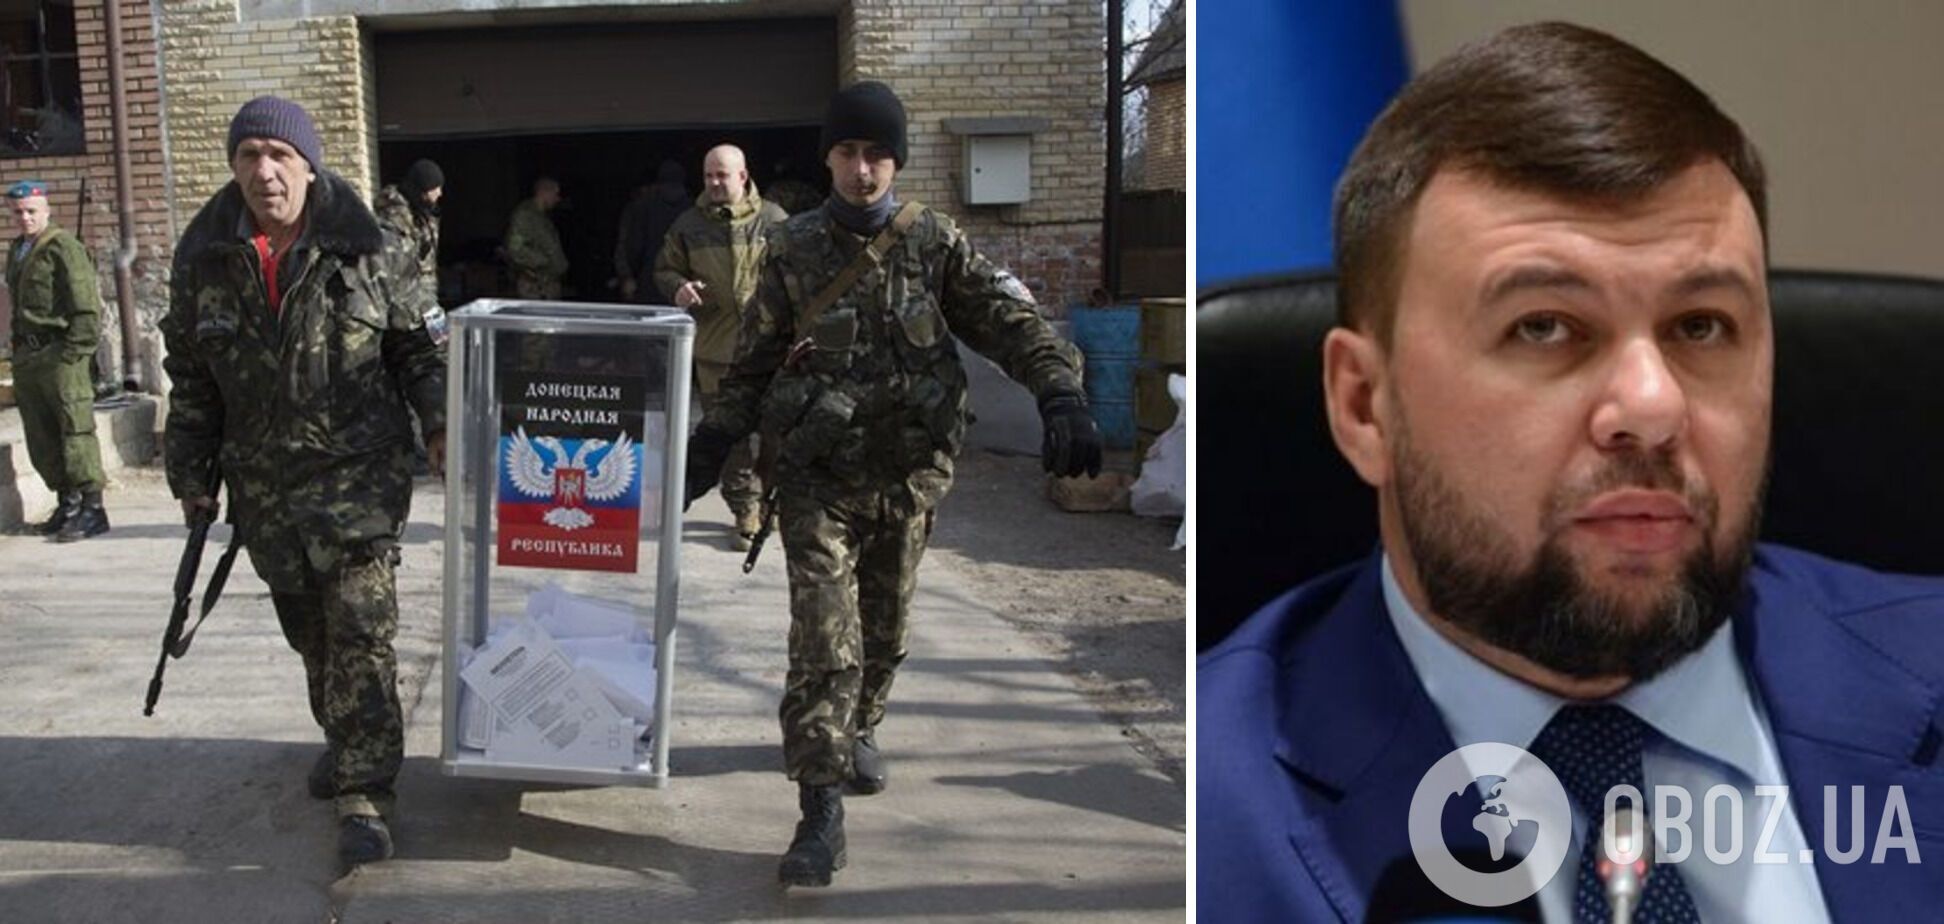 Пушилин хочет присоединить оккупированную Донецкую область к России путем 'референдума'